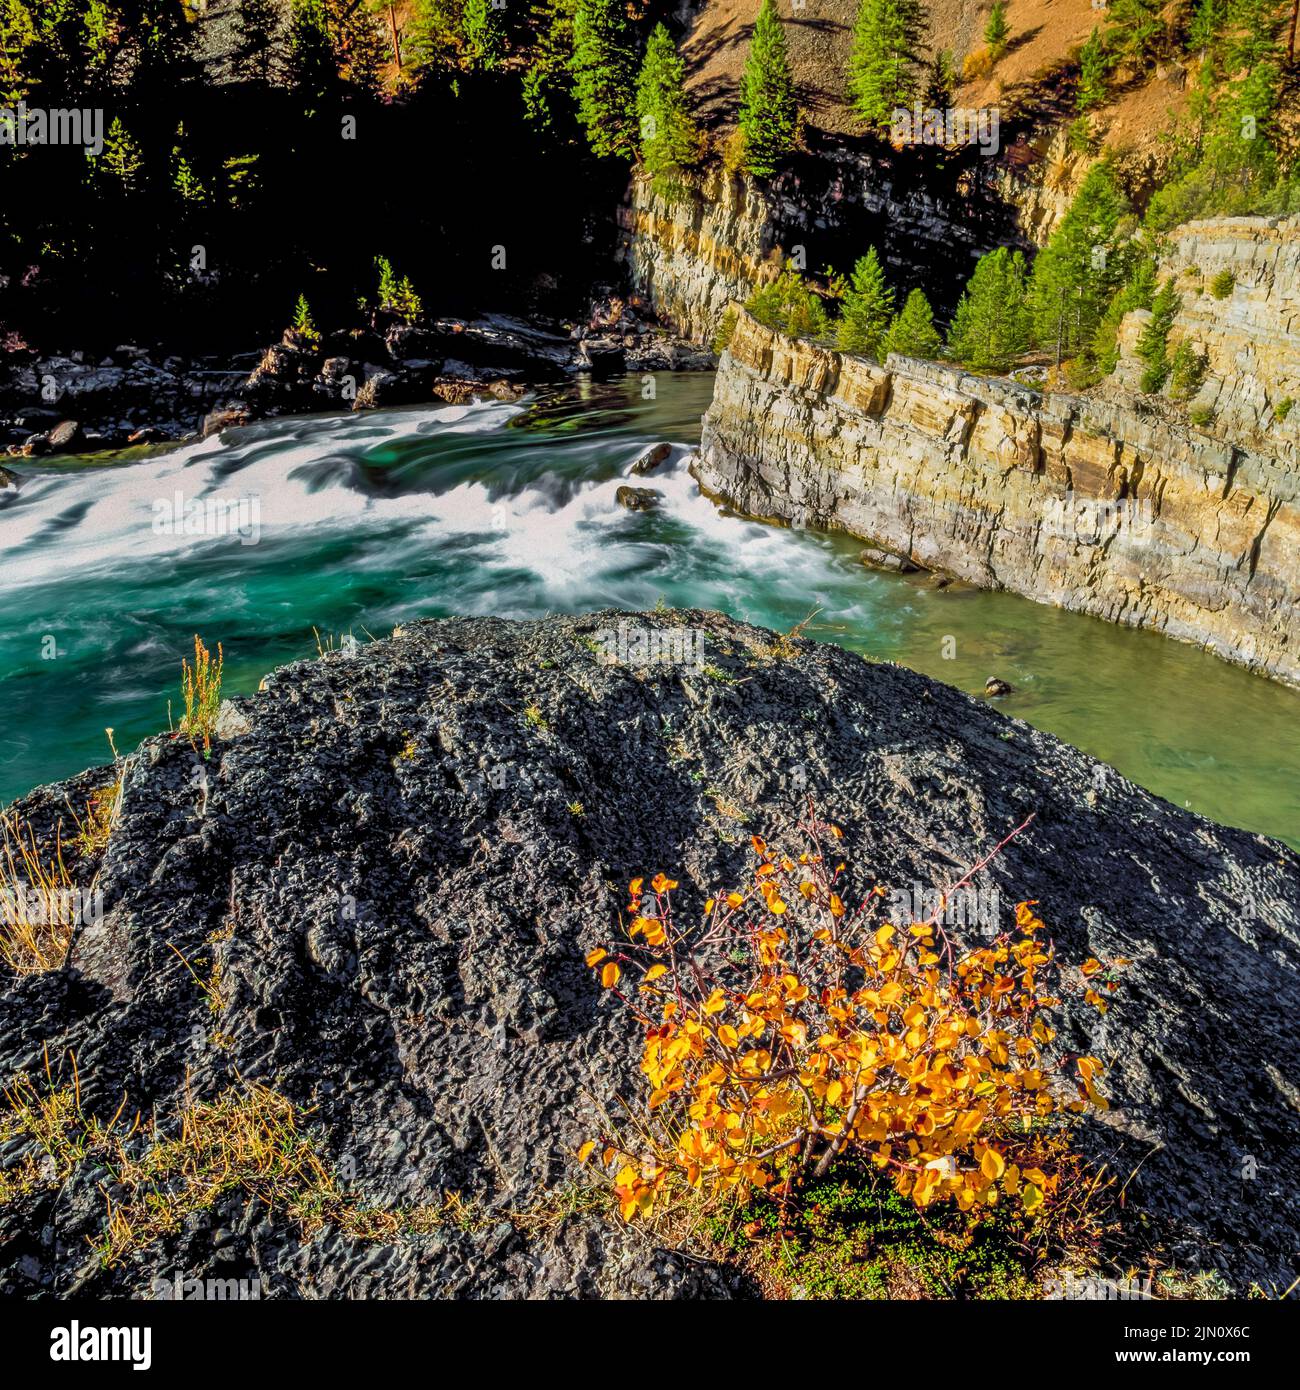 kootenai river and cliffs downstream from kootenai falls near libby, montana Stock Photo